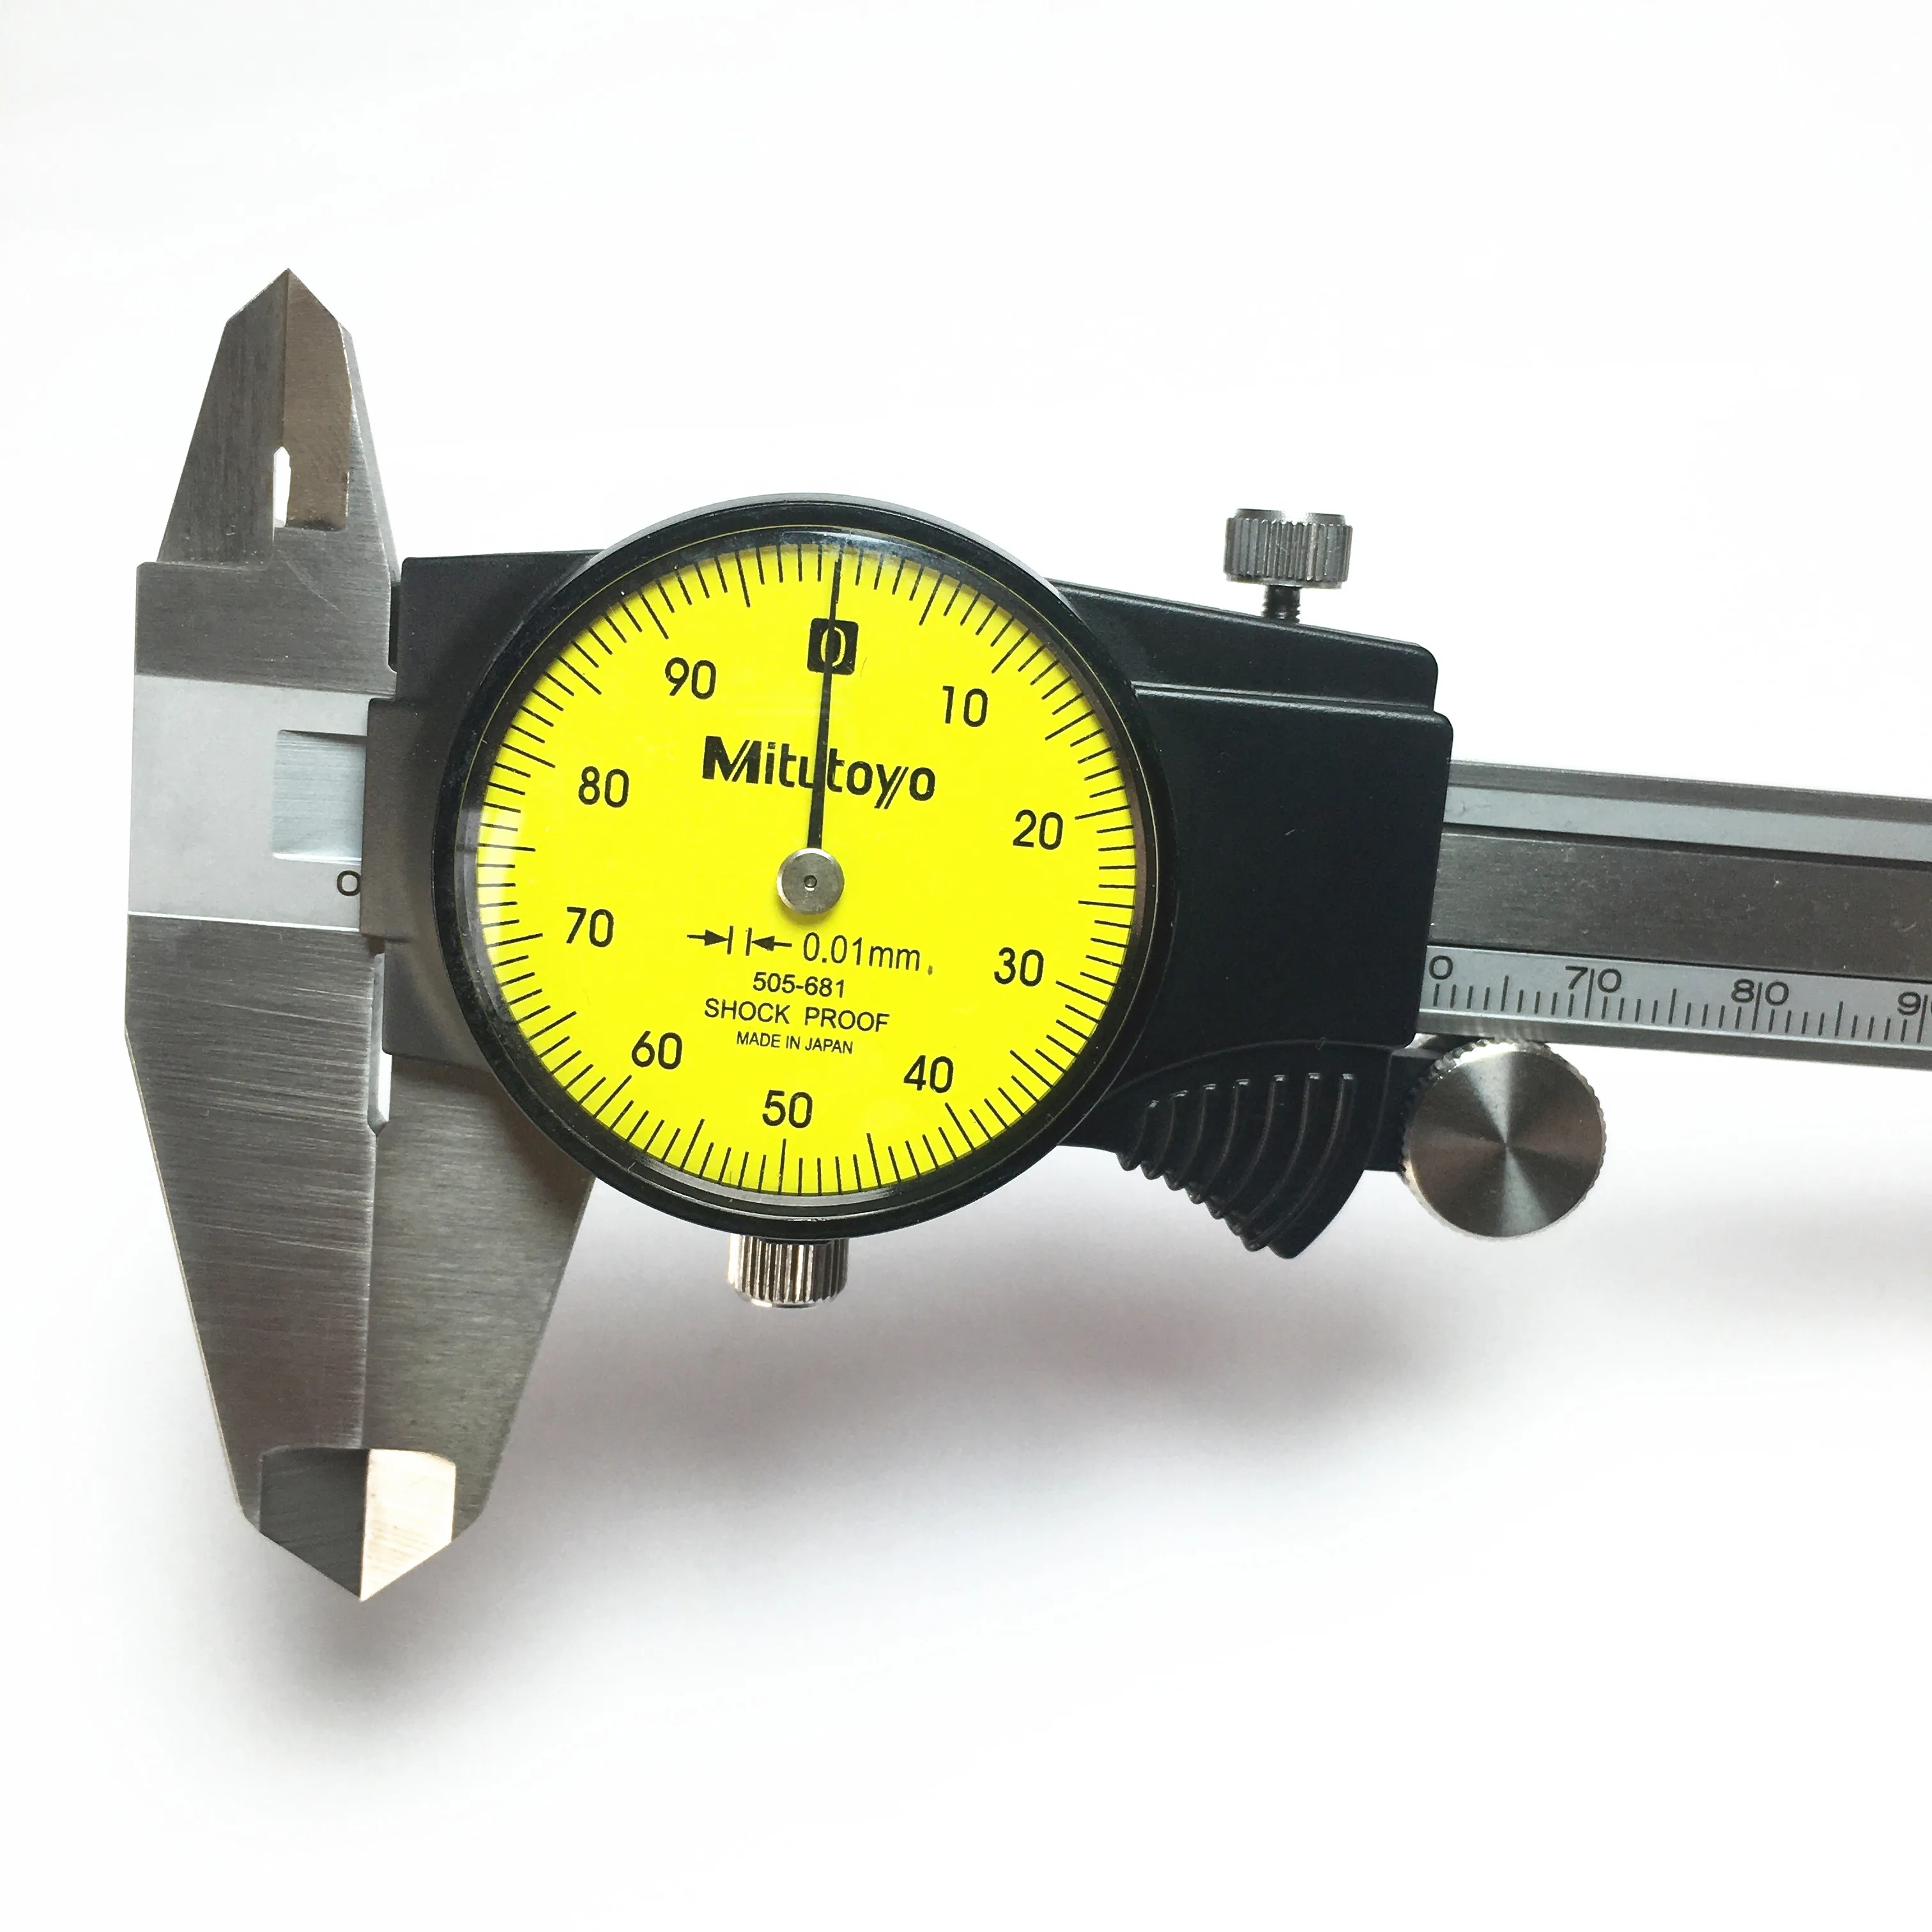 Vernier Caliper 505-681 0-150mm 505-682 Metric Caliper 0.01mm Micrometer Gauge Measuring Tools Measurement Stability